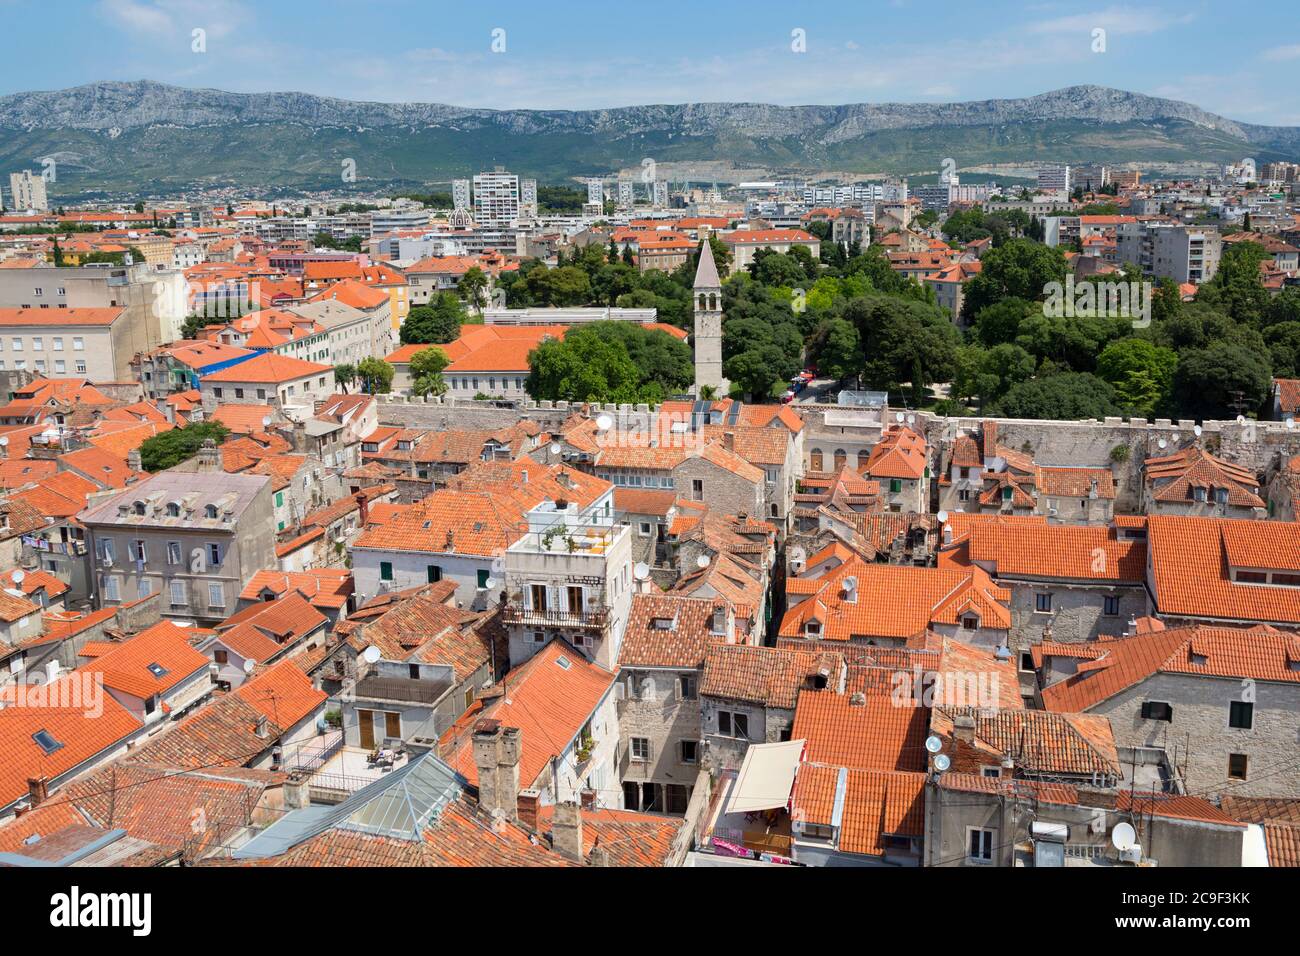 Spalato, Costa dalmata, Croazia. Alta vista generale sul tetto. Il centro storico di Spalato è un sito patrimonio dell'umanità dell'UNESCO. Foto Stock